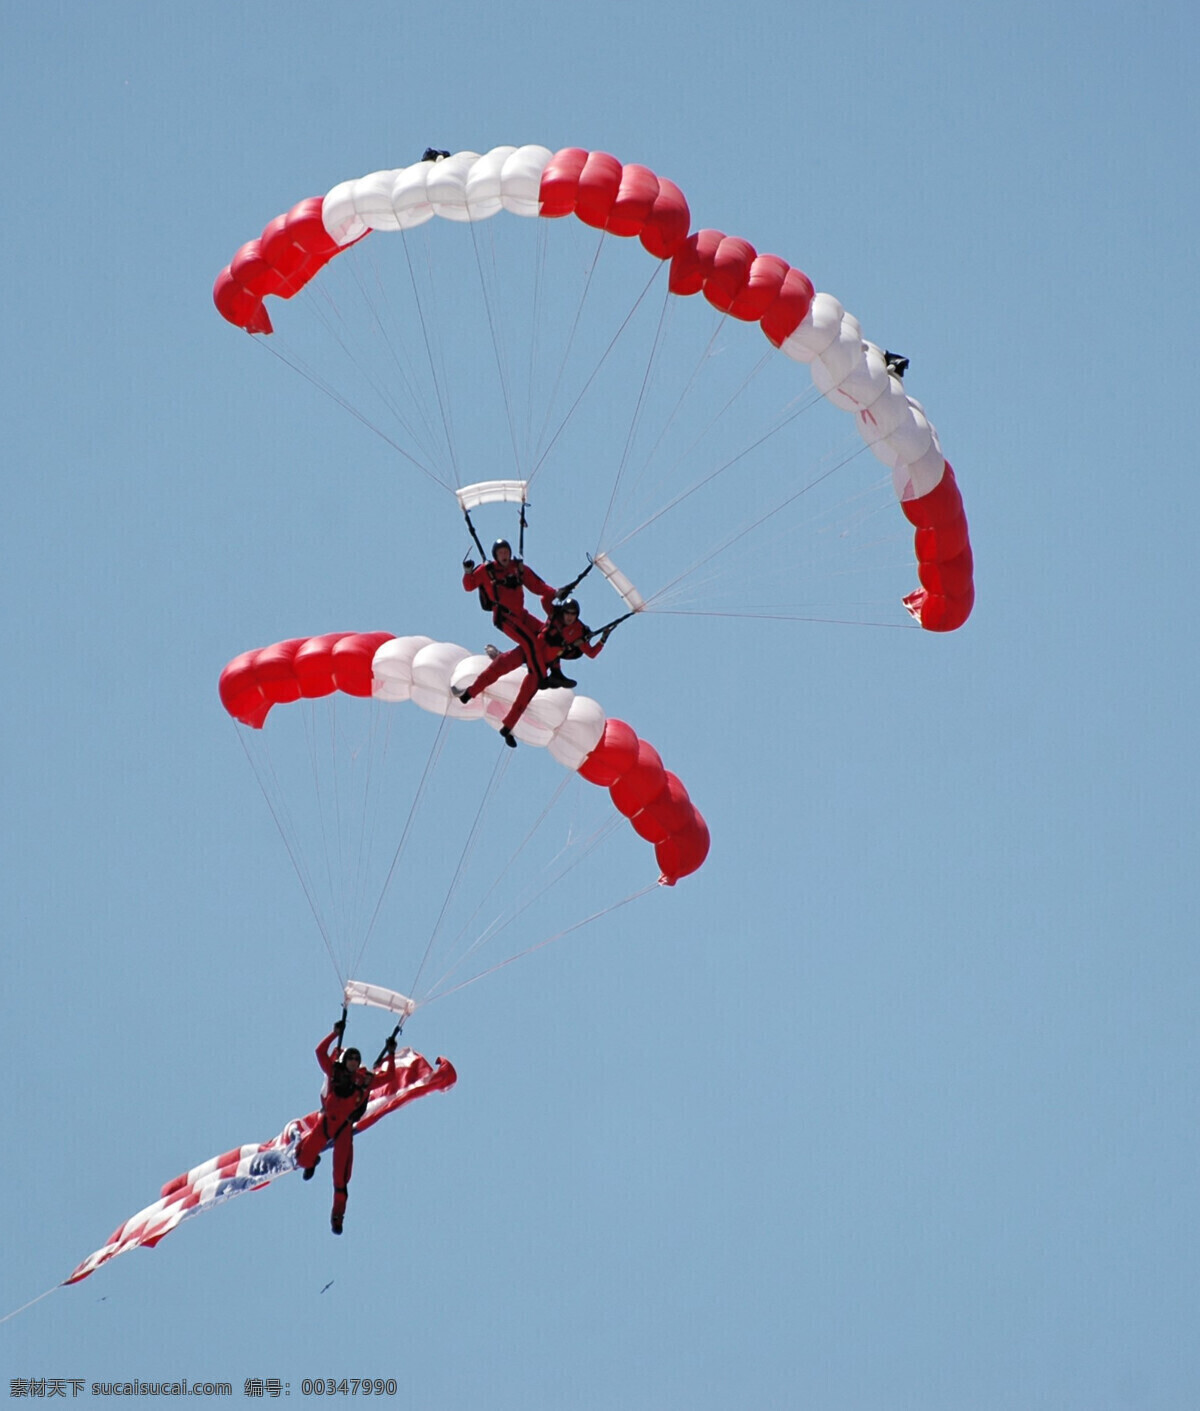 跳伞 极限运动 跳伞运动 降落伞 滑翔伞 体育运动 生活百科